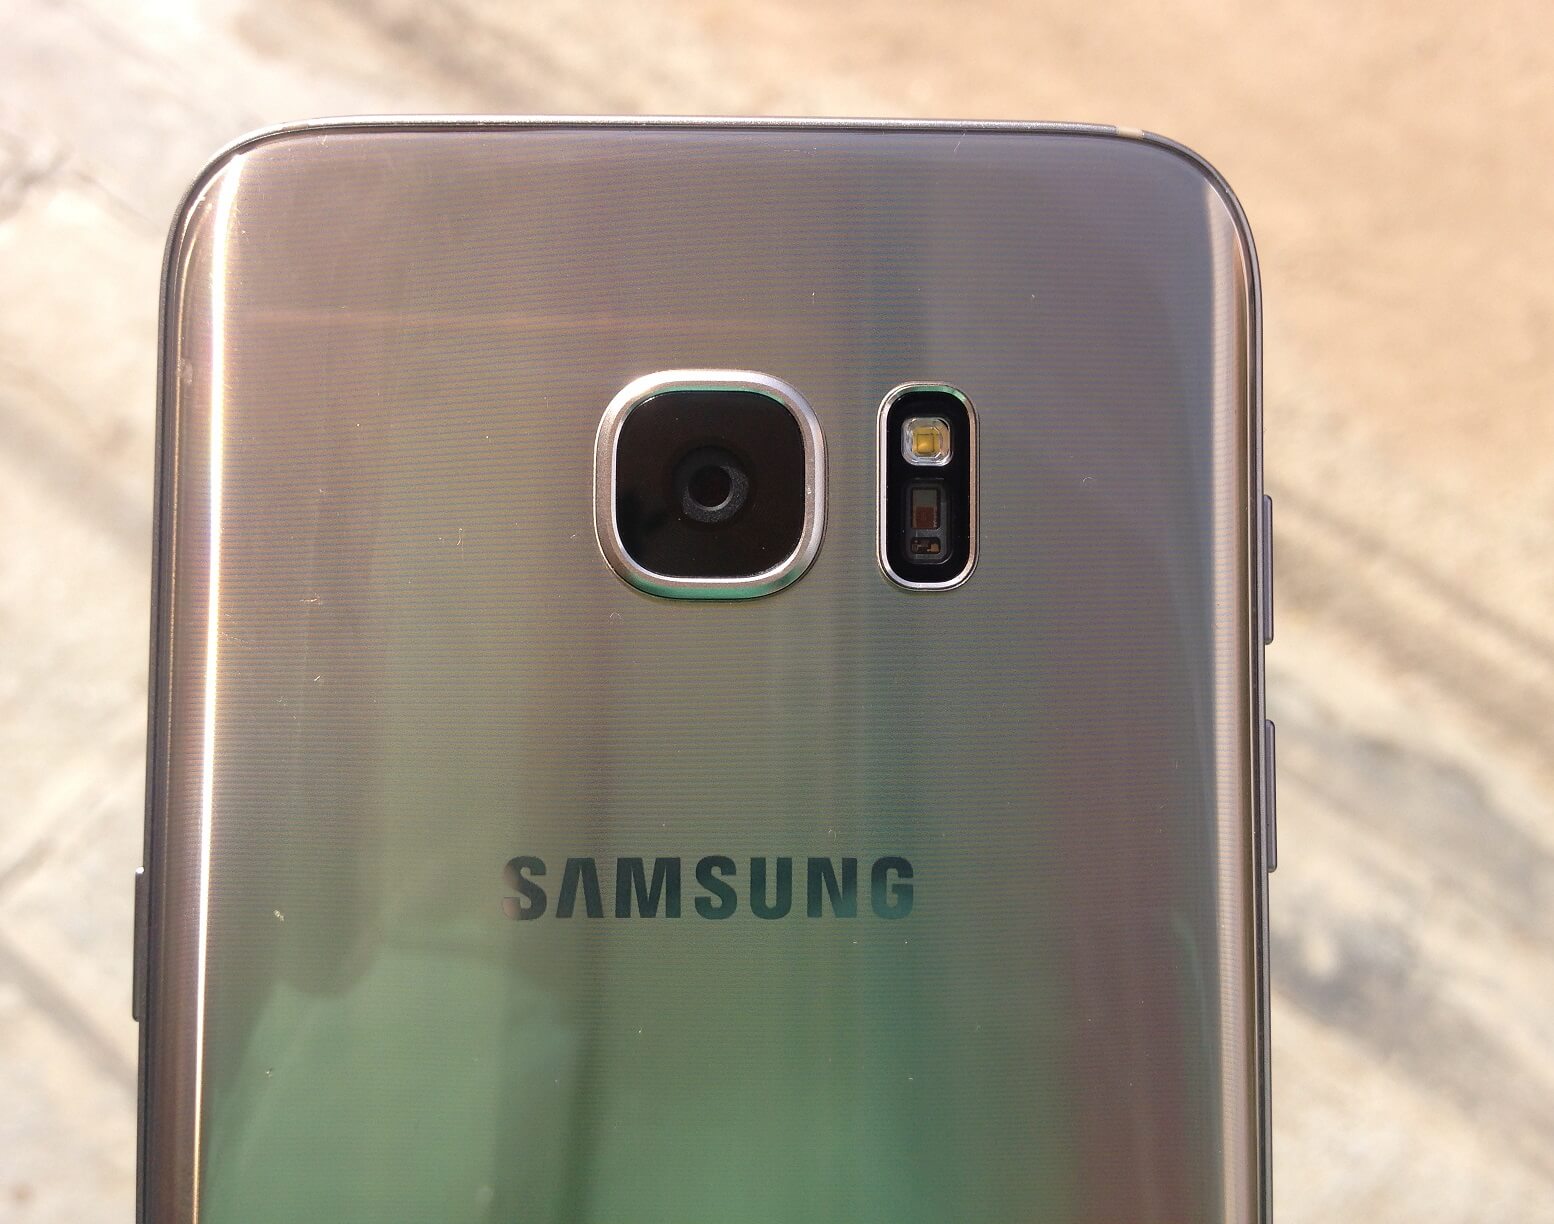 Galaxy S7 Live Photos